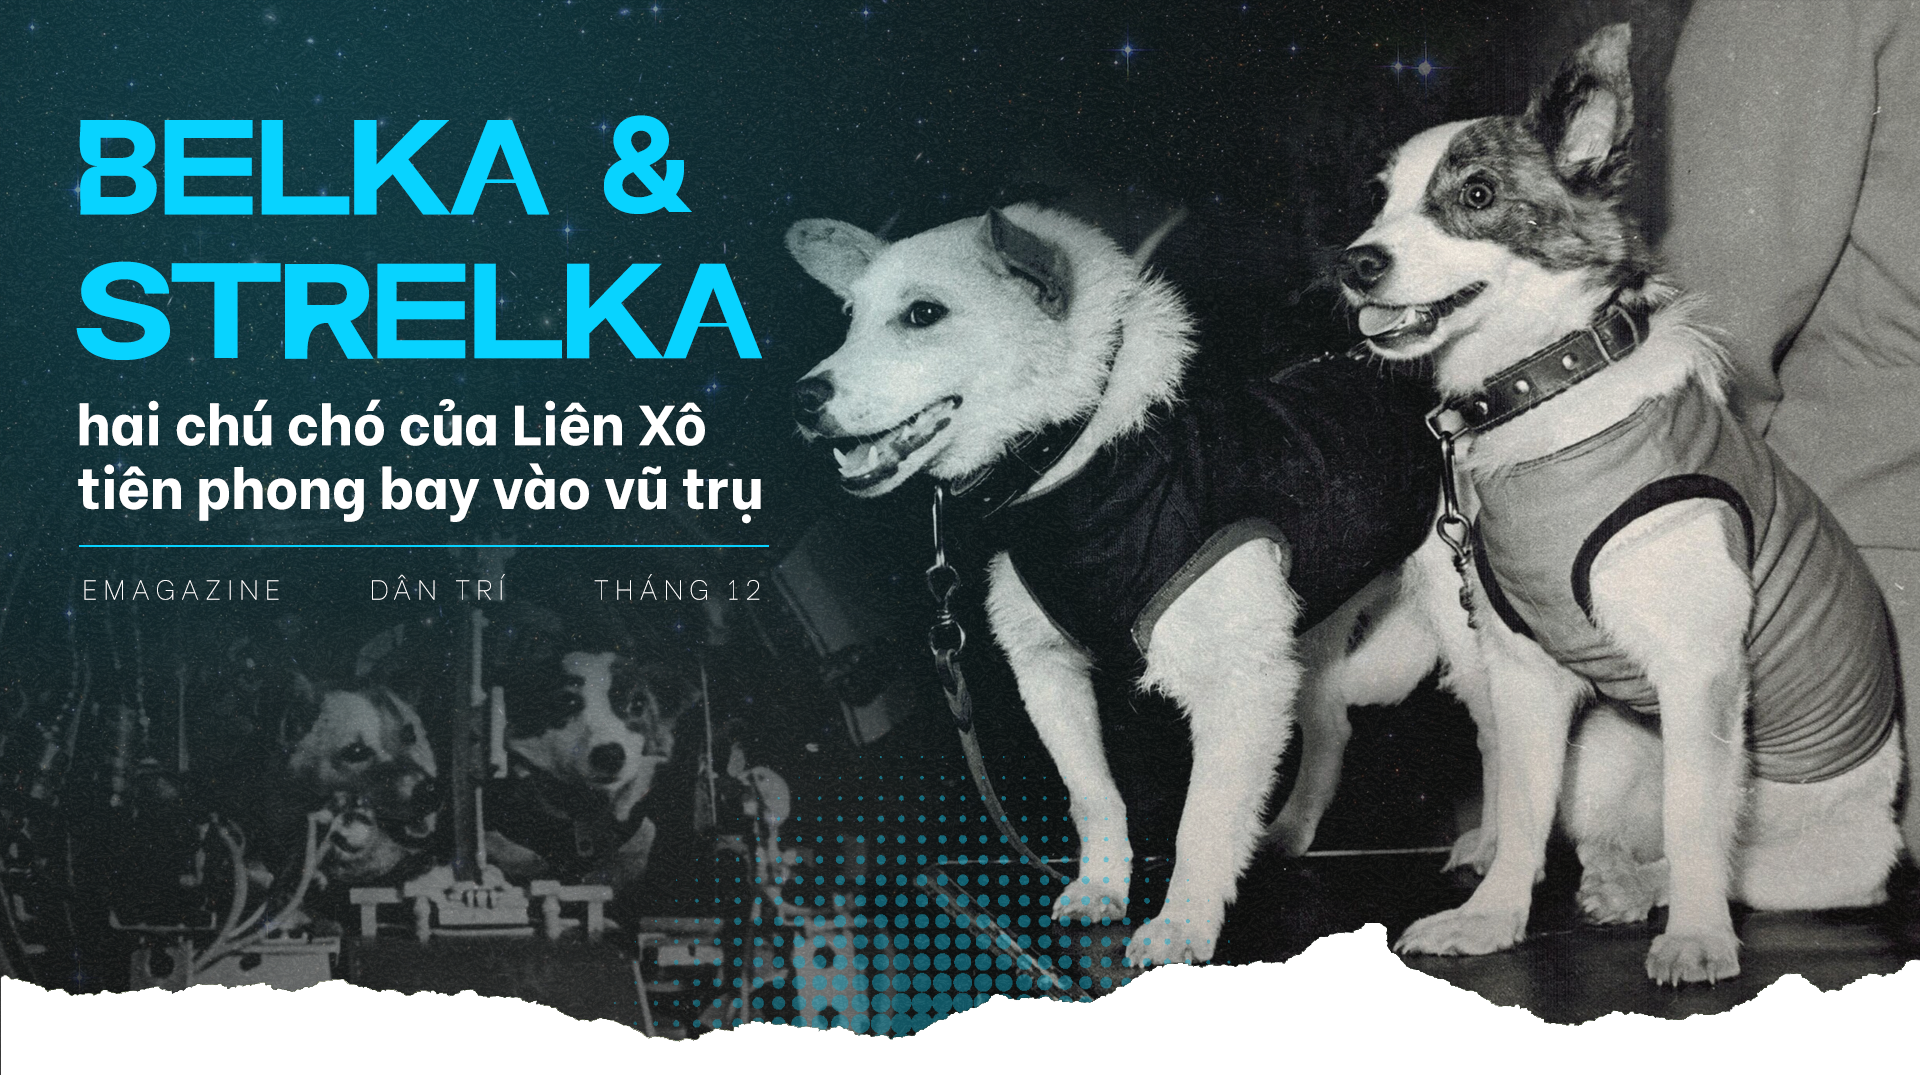 Chuyện về Belka và Strelka - hai chú chó Liên Xô tiên phong bay vào vũ trụ